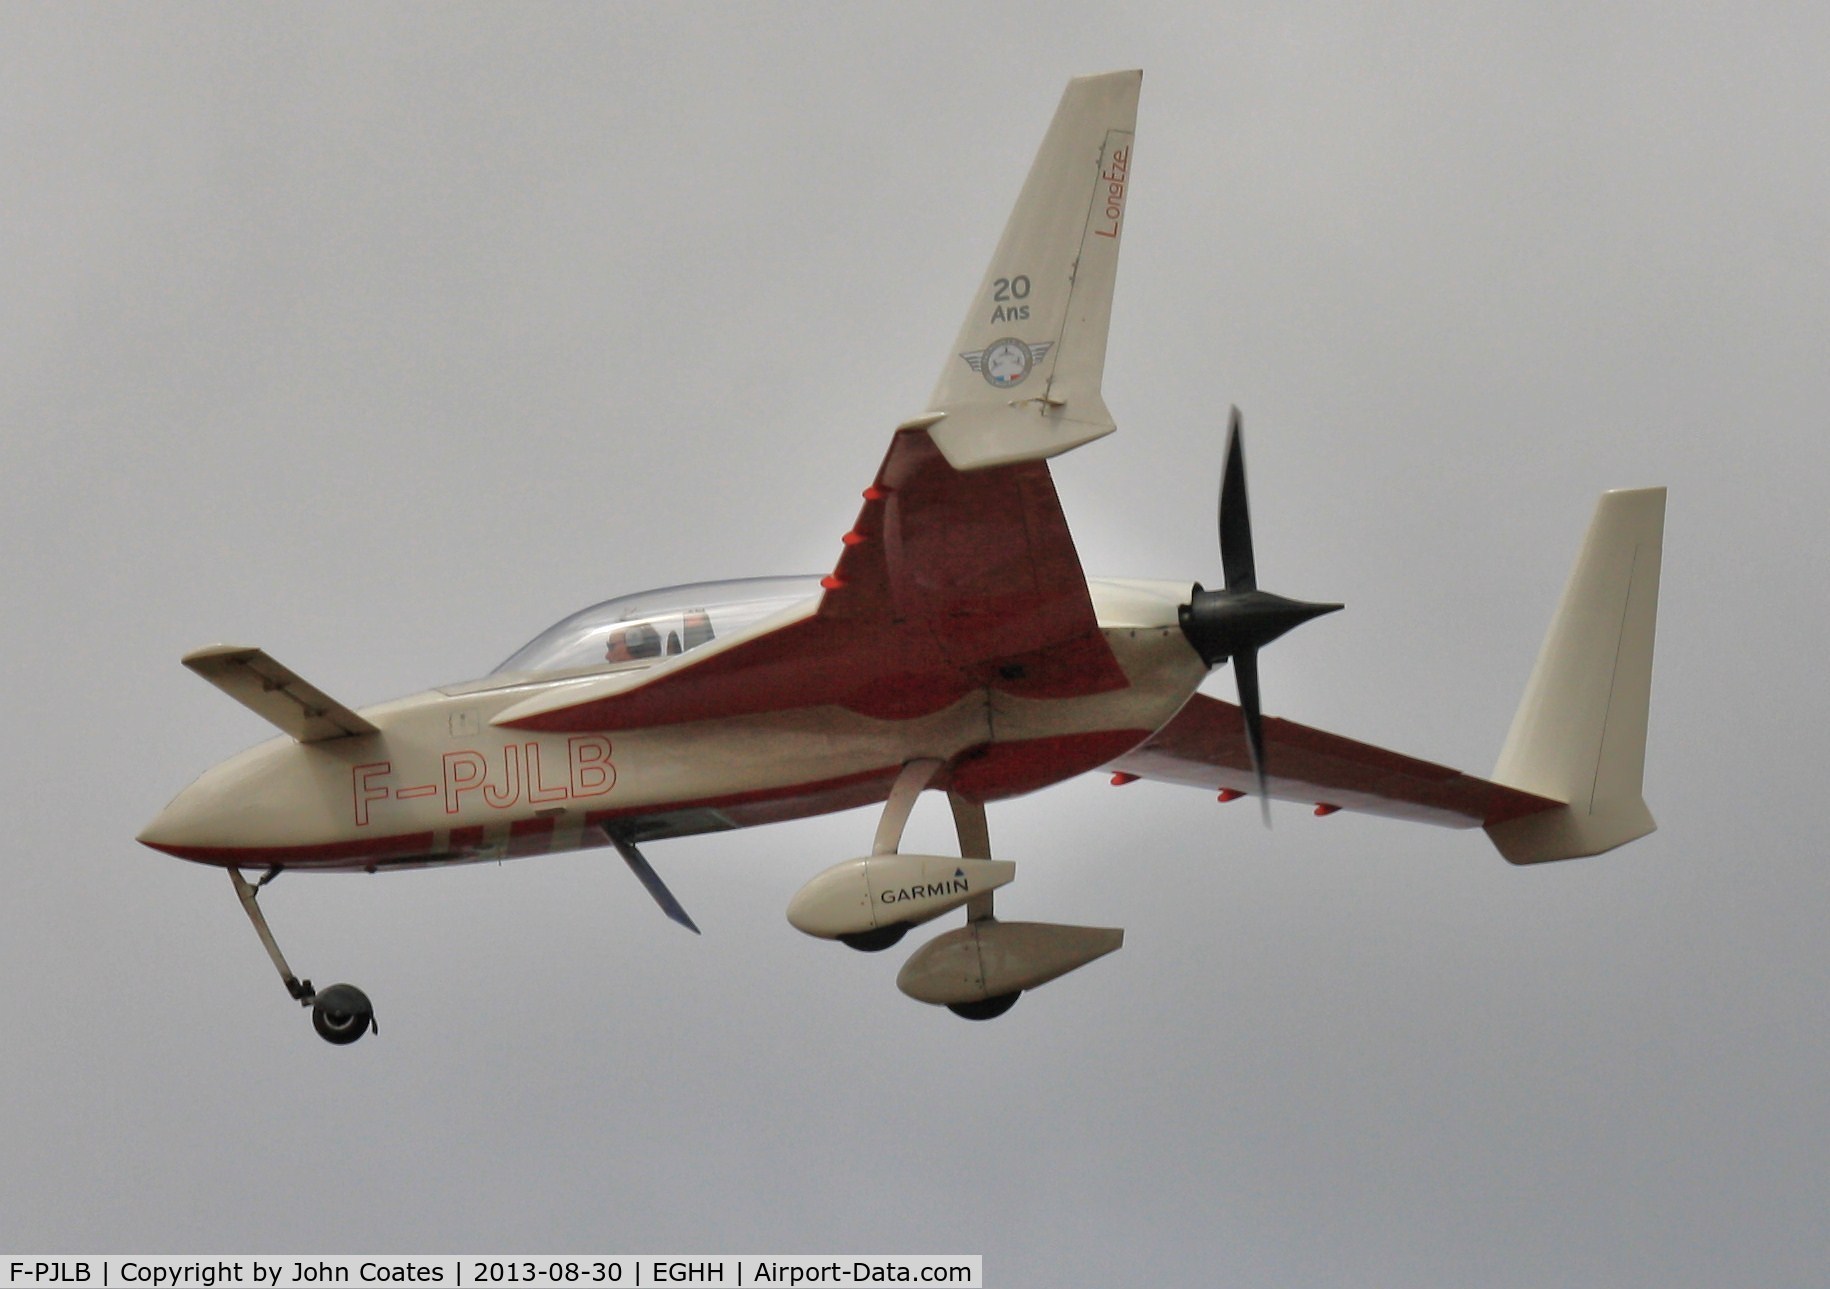 F-PJLB, Rutan Long-EZ C/N 1344, Returning from Seaside display